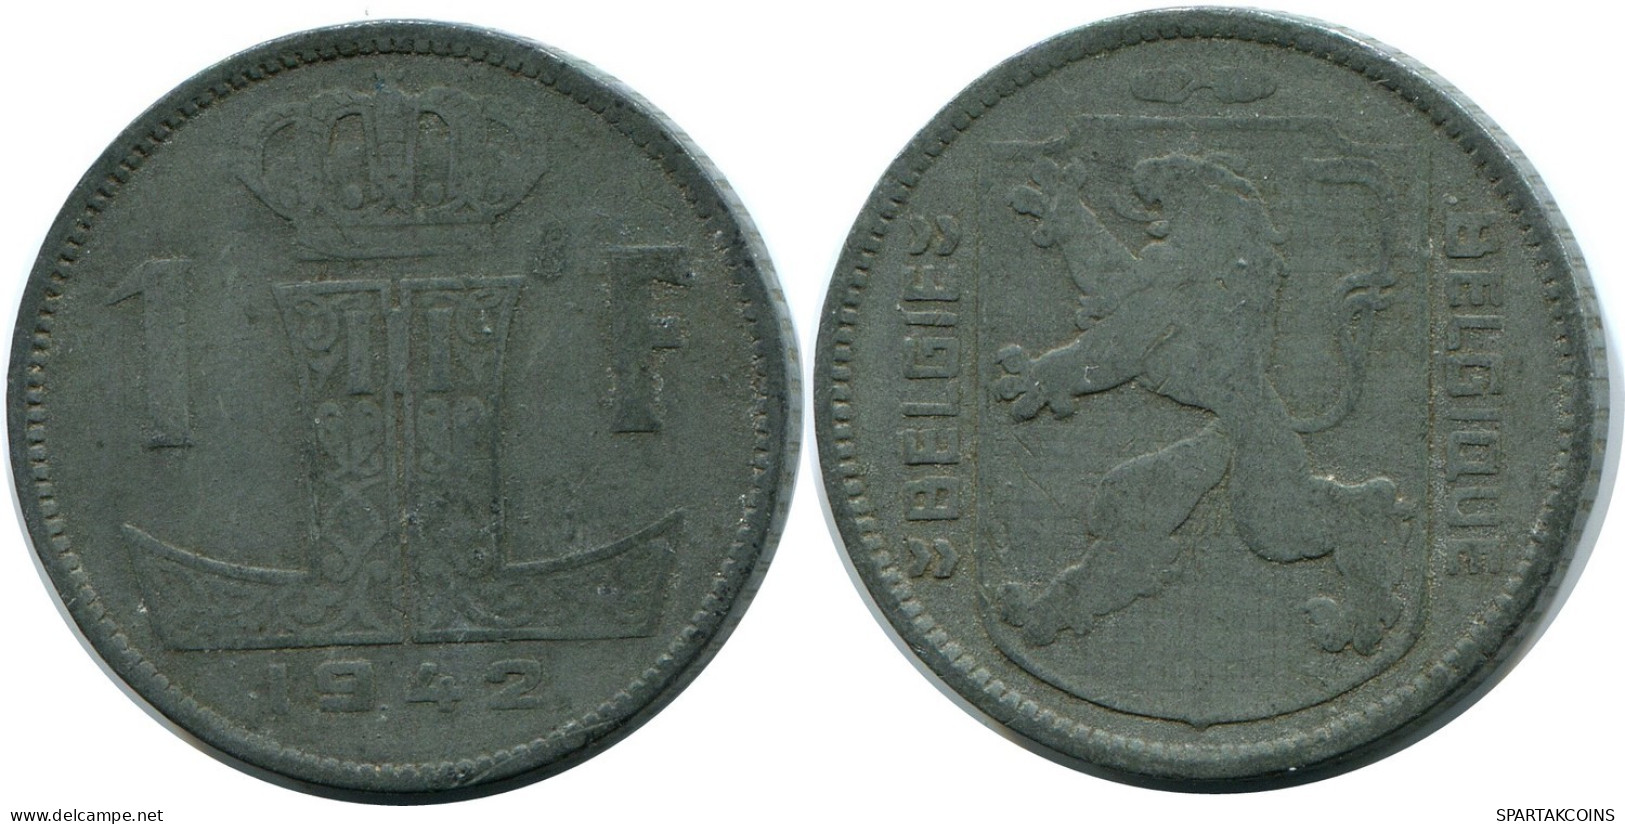 1 FRANC 1942 BELGIE-BELGIQUE BELGIUM Coin #BA709.U.A - 1 Franc